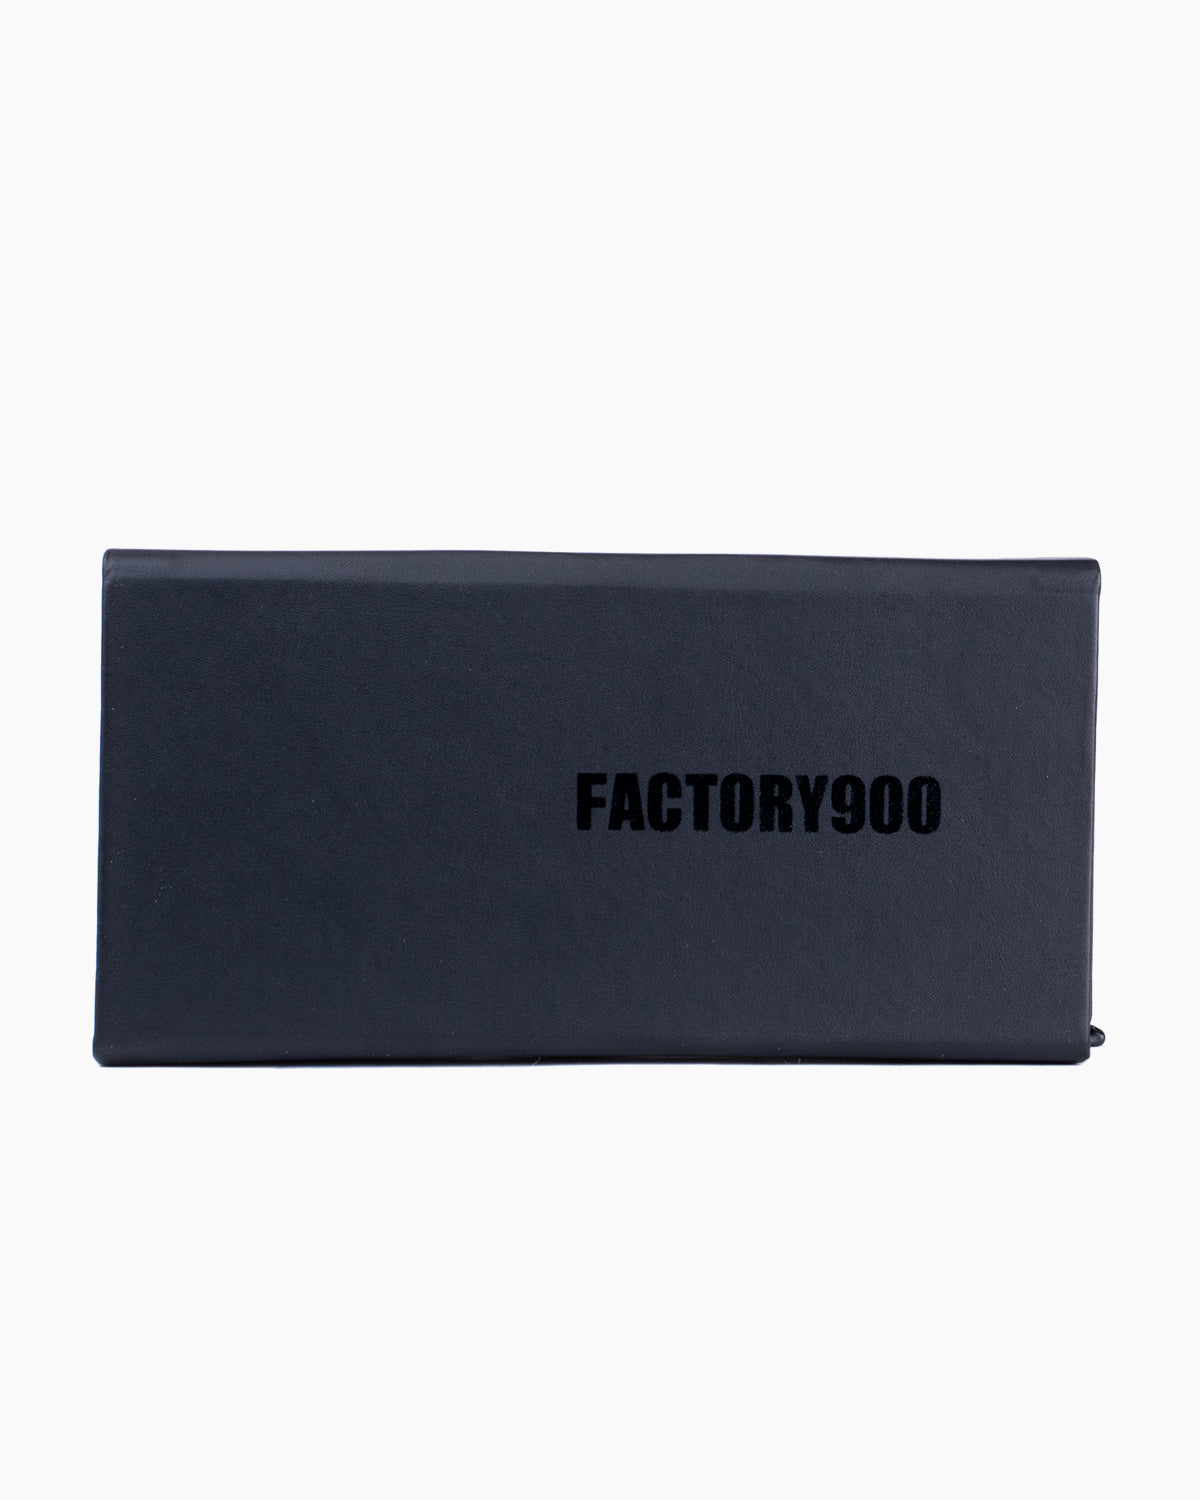 Factory 900 - MF001 - 03 | glasses bar